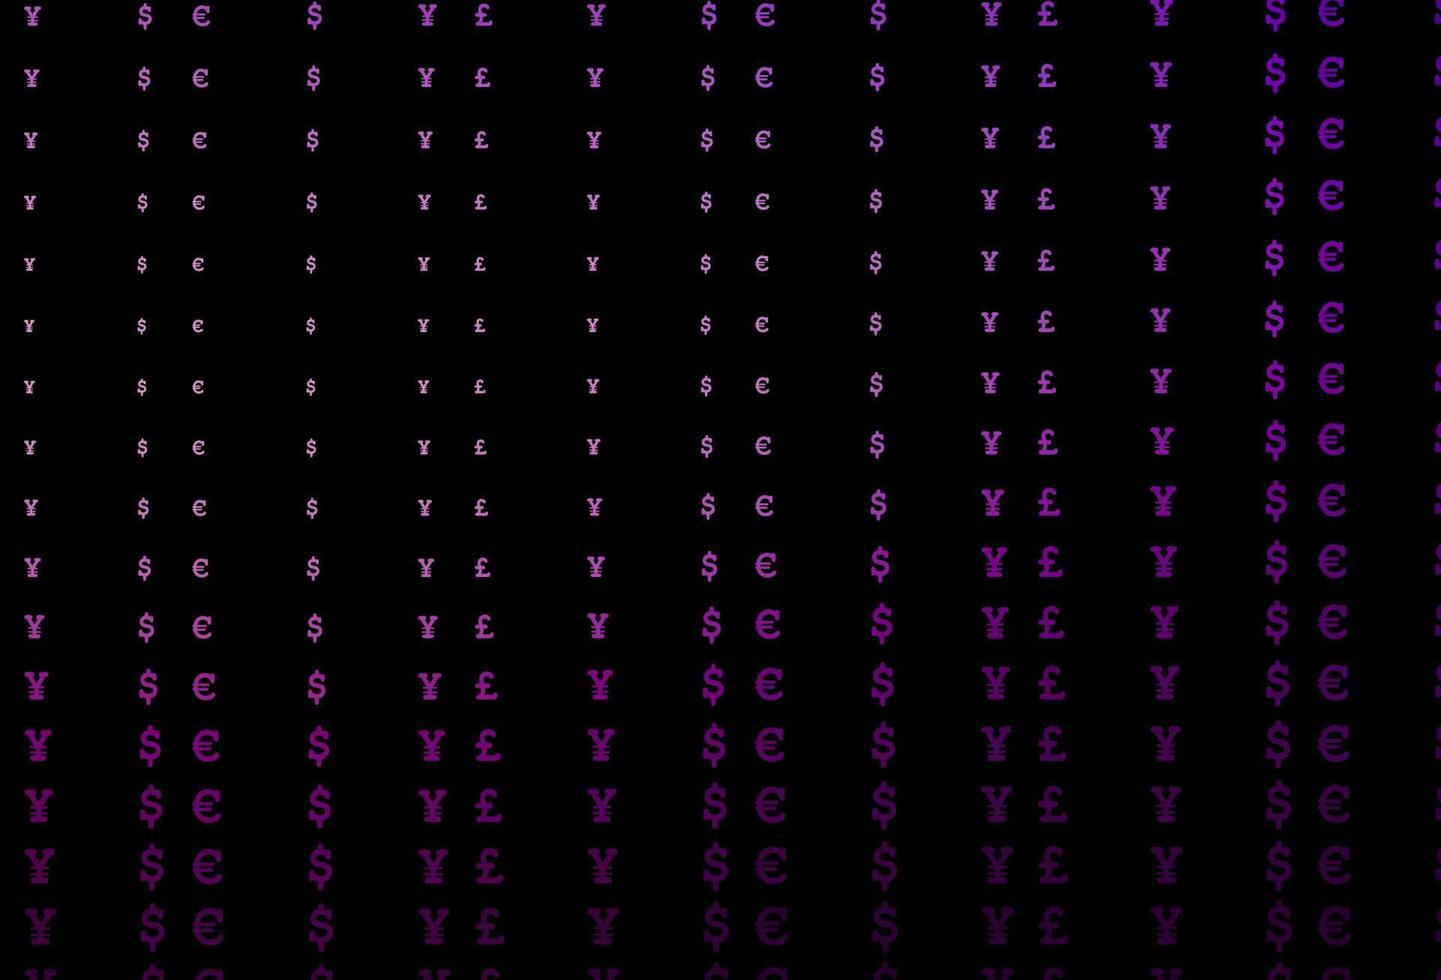 modello vettoriale viola scuro con eur, usd, gbp, jpy.